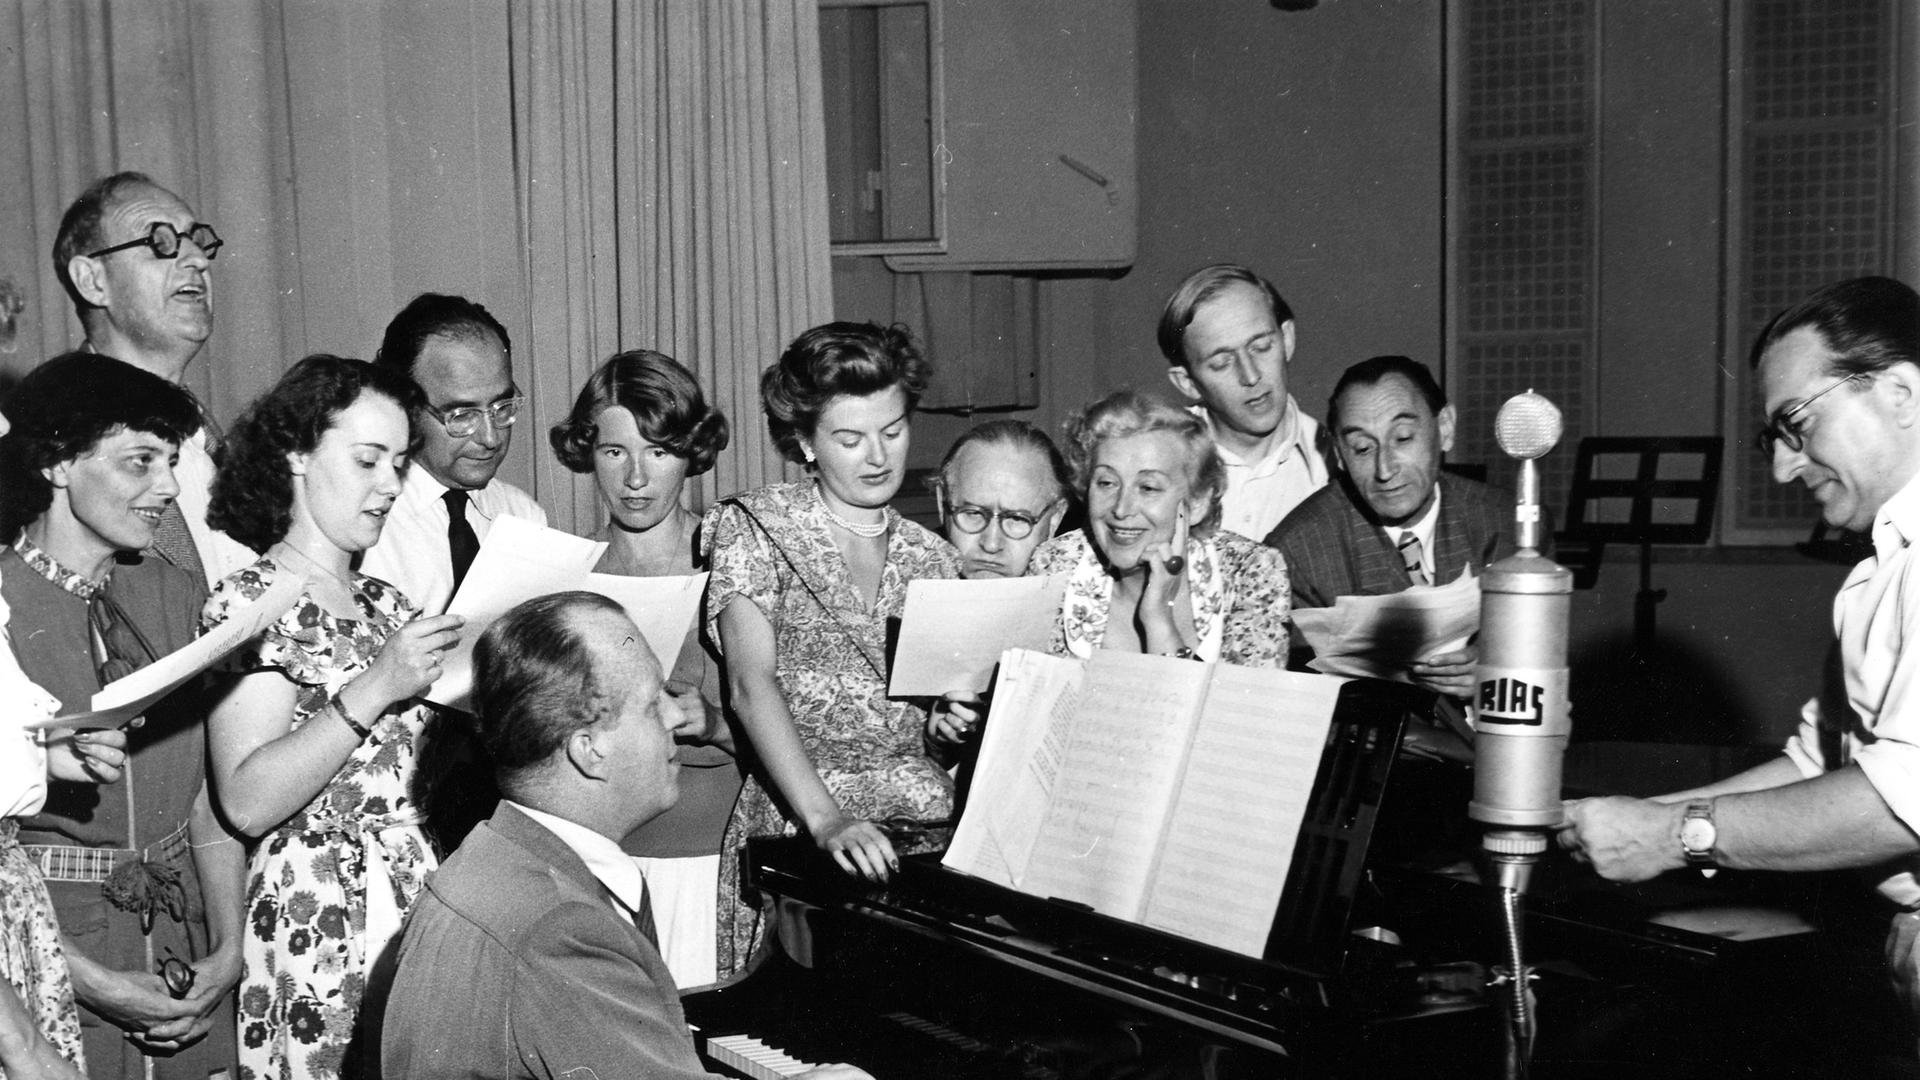 Eine schwarz-weiß Aufnahme aus dem Jahr 1950. Ein Mann spielt am Klavier und ist umgeben von einer Gruppe von Frauen und Männern, die währenddessen singt. 